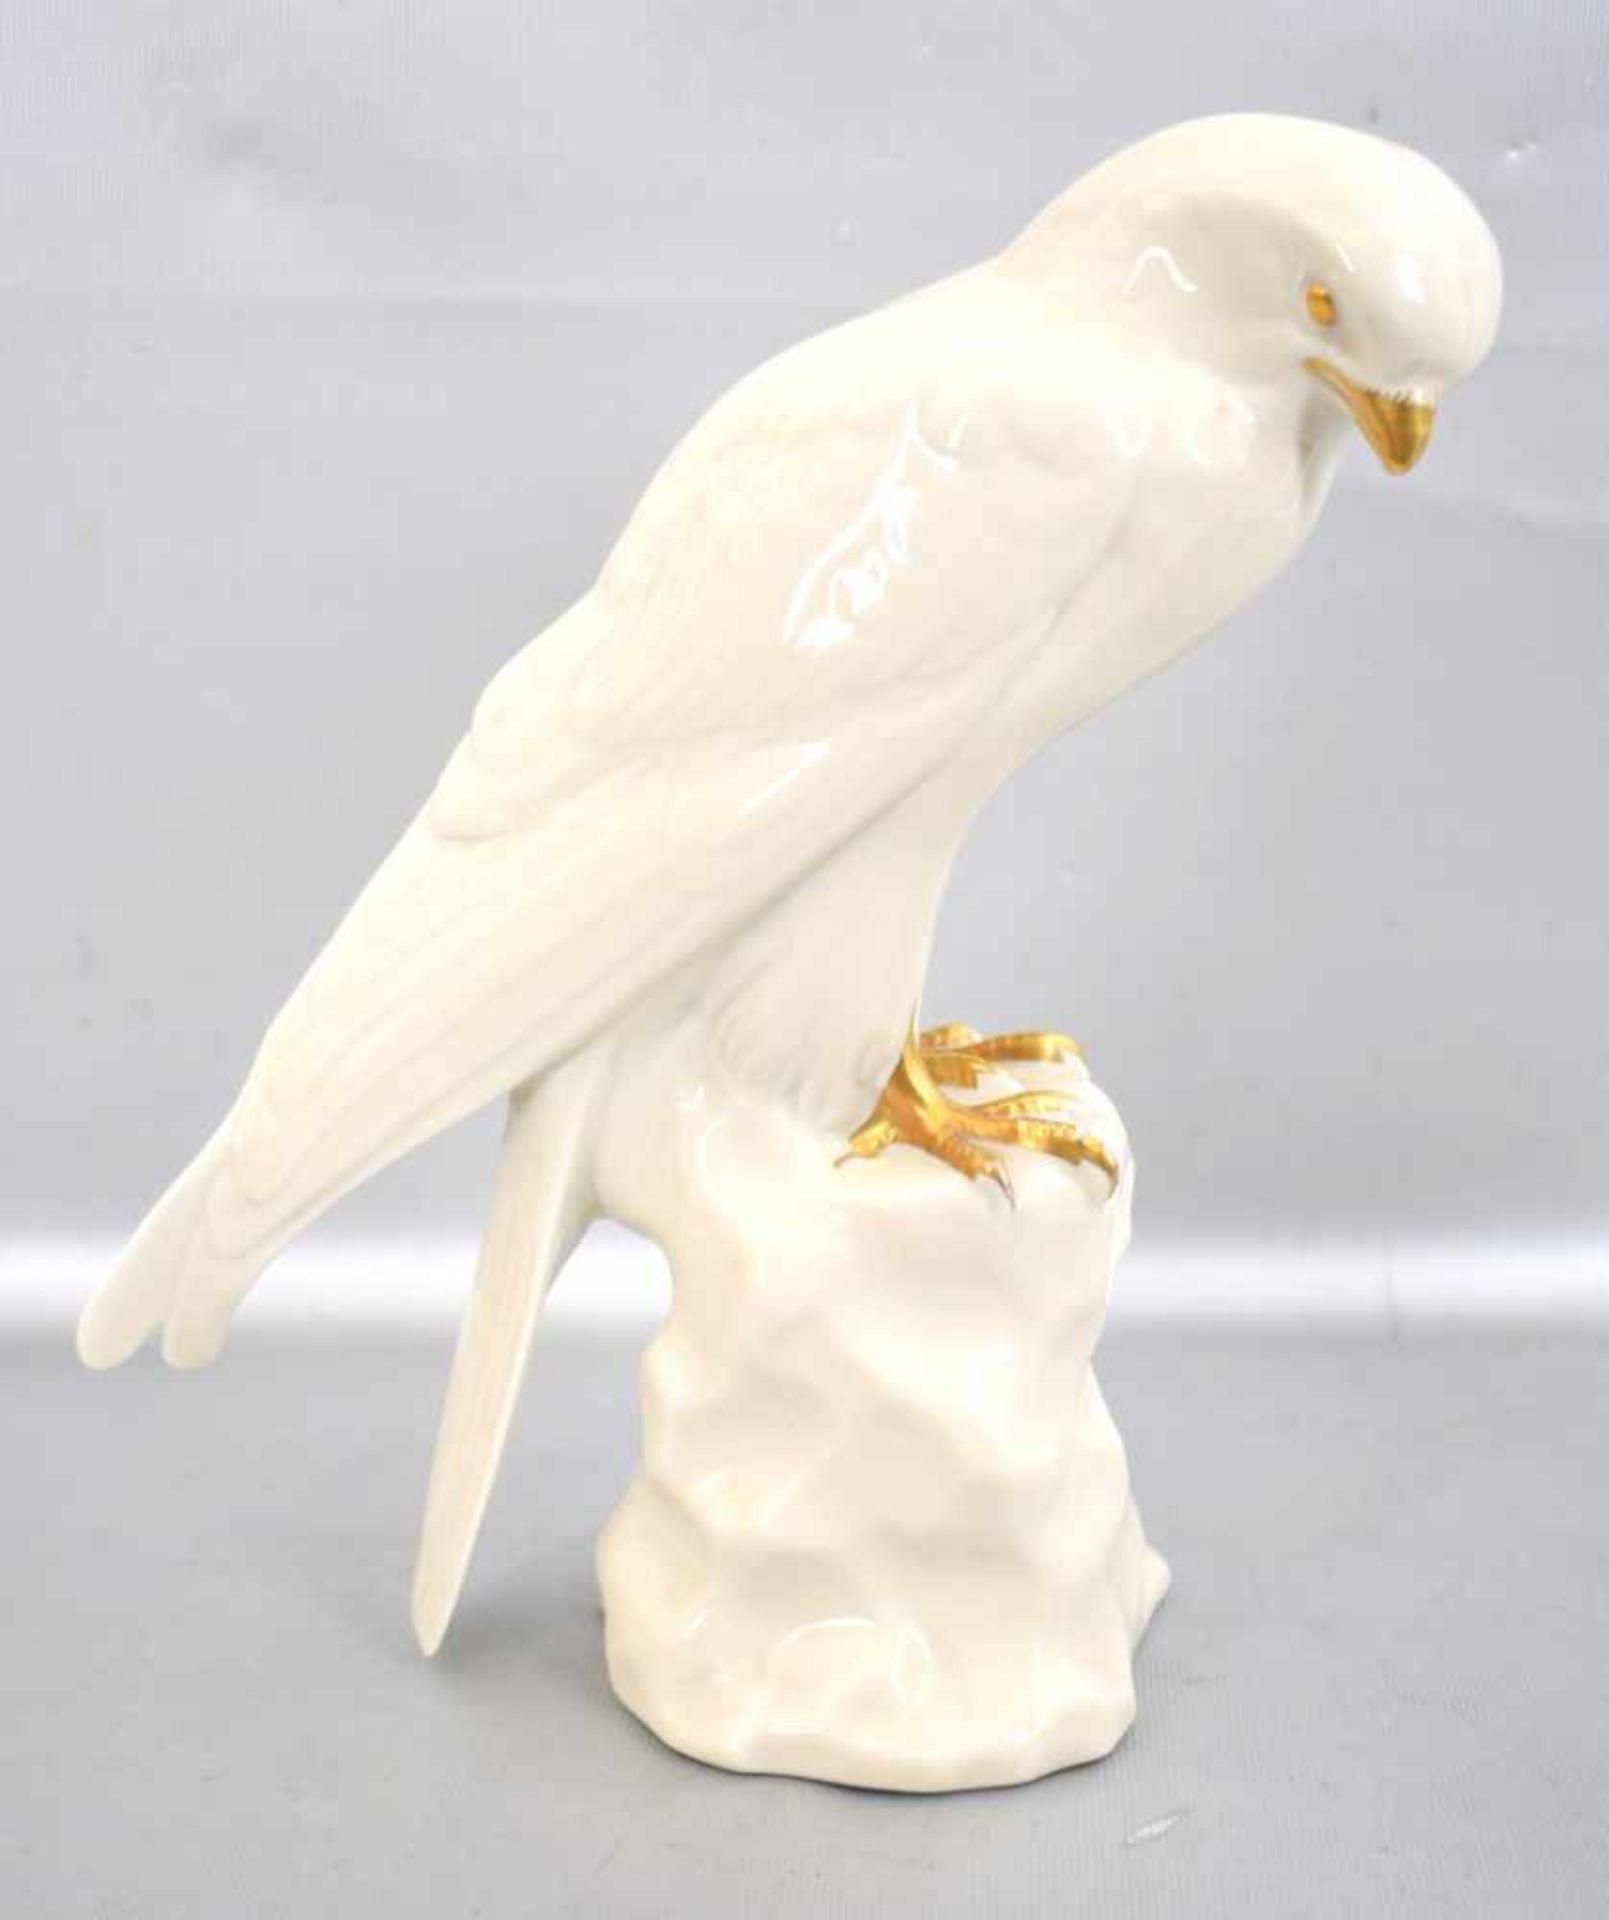 Greifvogel auf Steinsockel sitzend, weiß glasiert, gold verziert, H 26 cm, FM Krautheim, 50er/60er